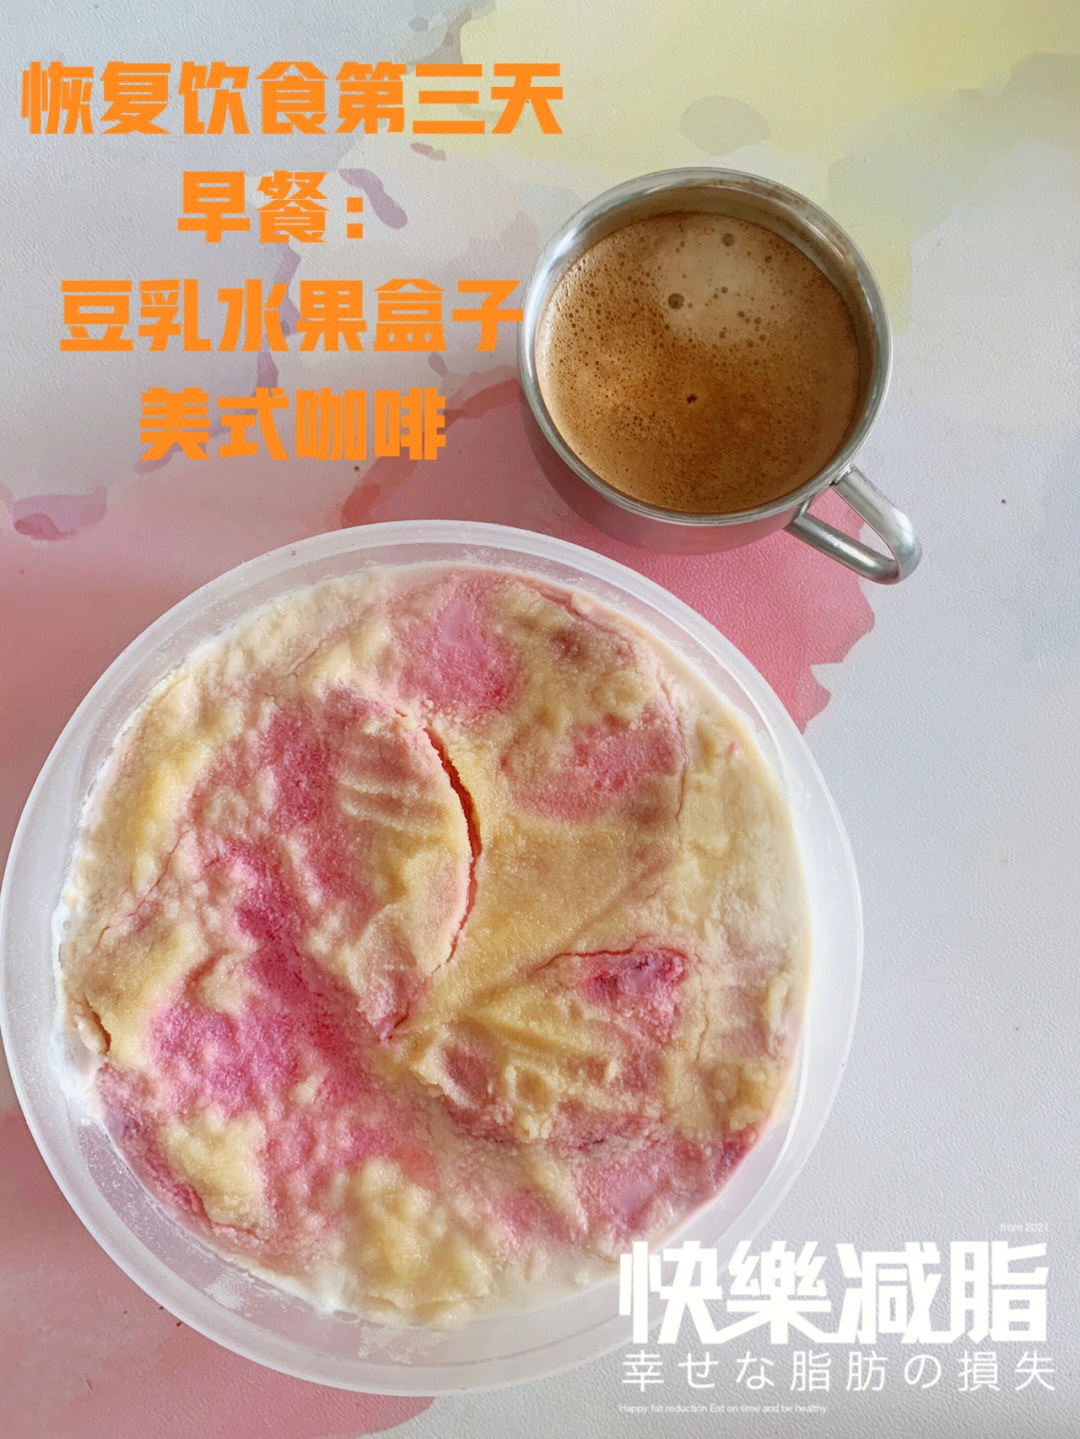 燕麦一层 牛奶 无糖豆浆粉 酸奶 火龙果*2)午餐13:30酸辣汤 方糕(白菜